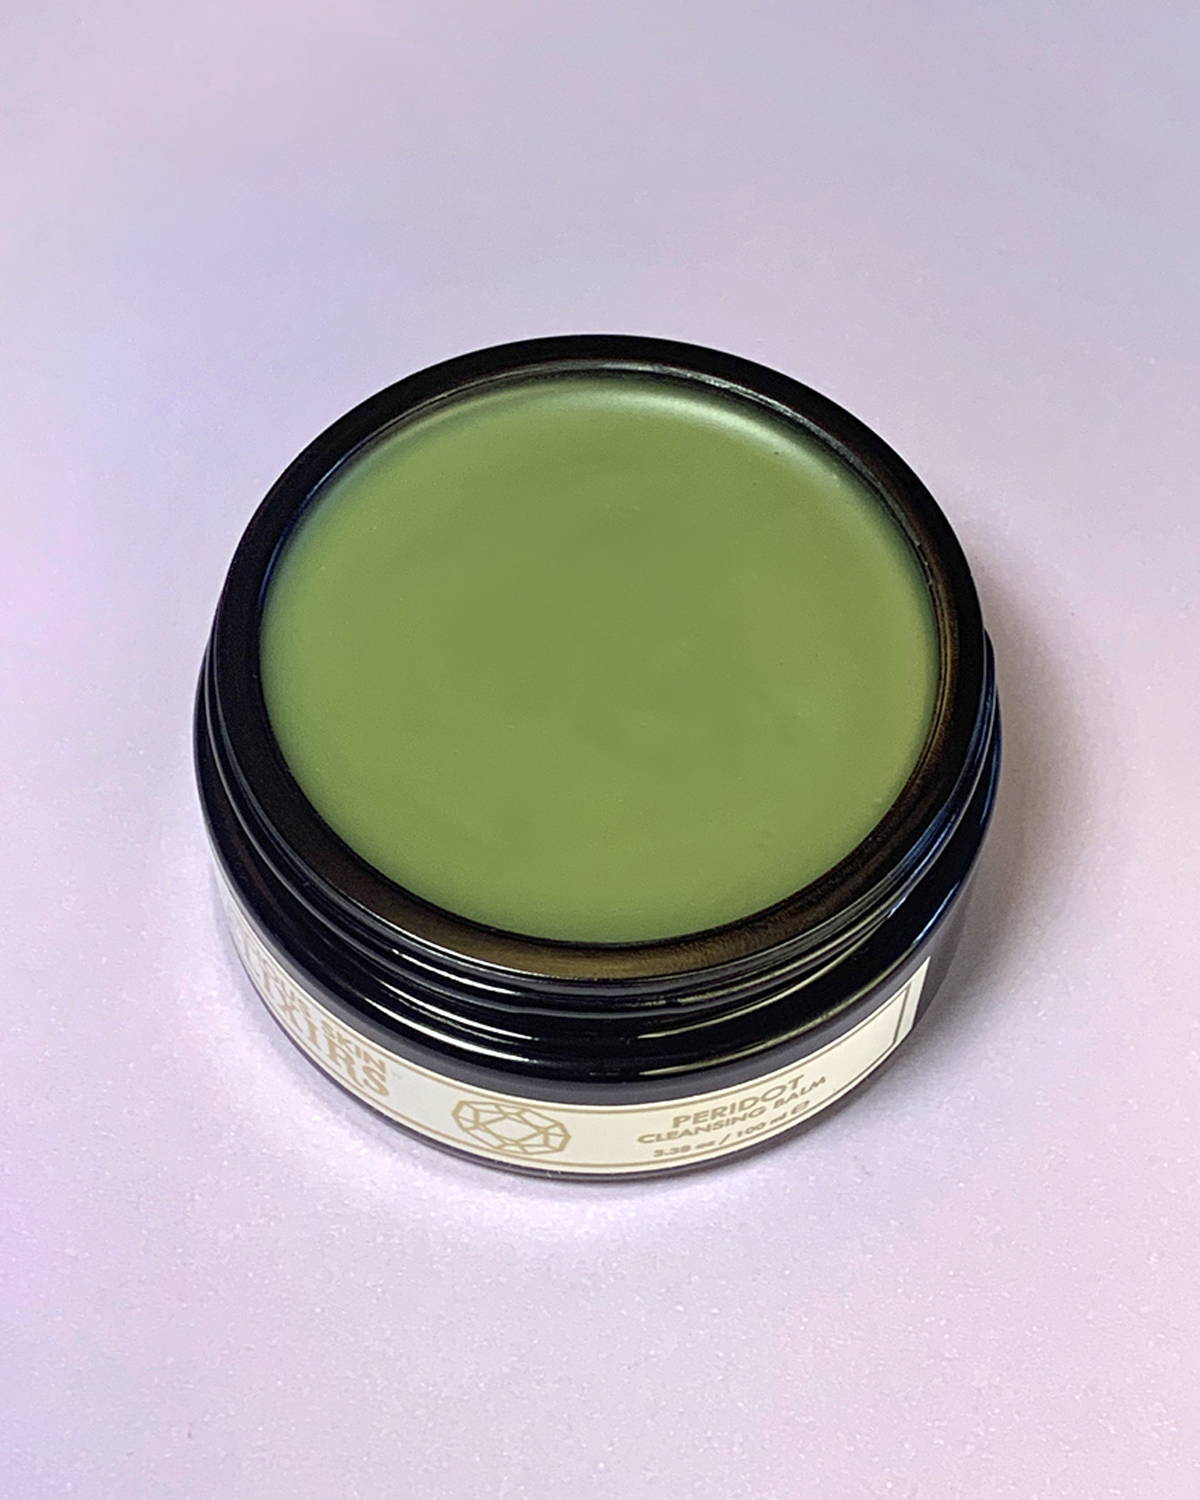 Amethyst Harmony Elixir face oil moisturizer for sensitive skin, acne, eczema, and rosacea